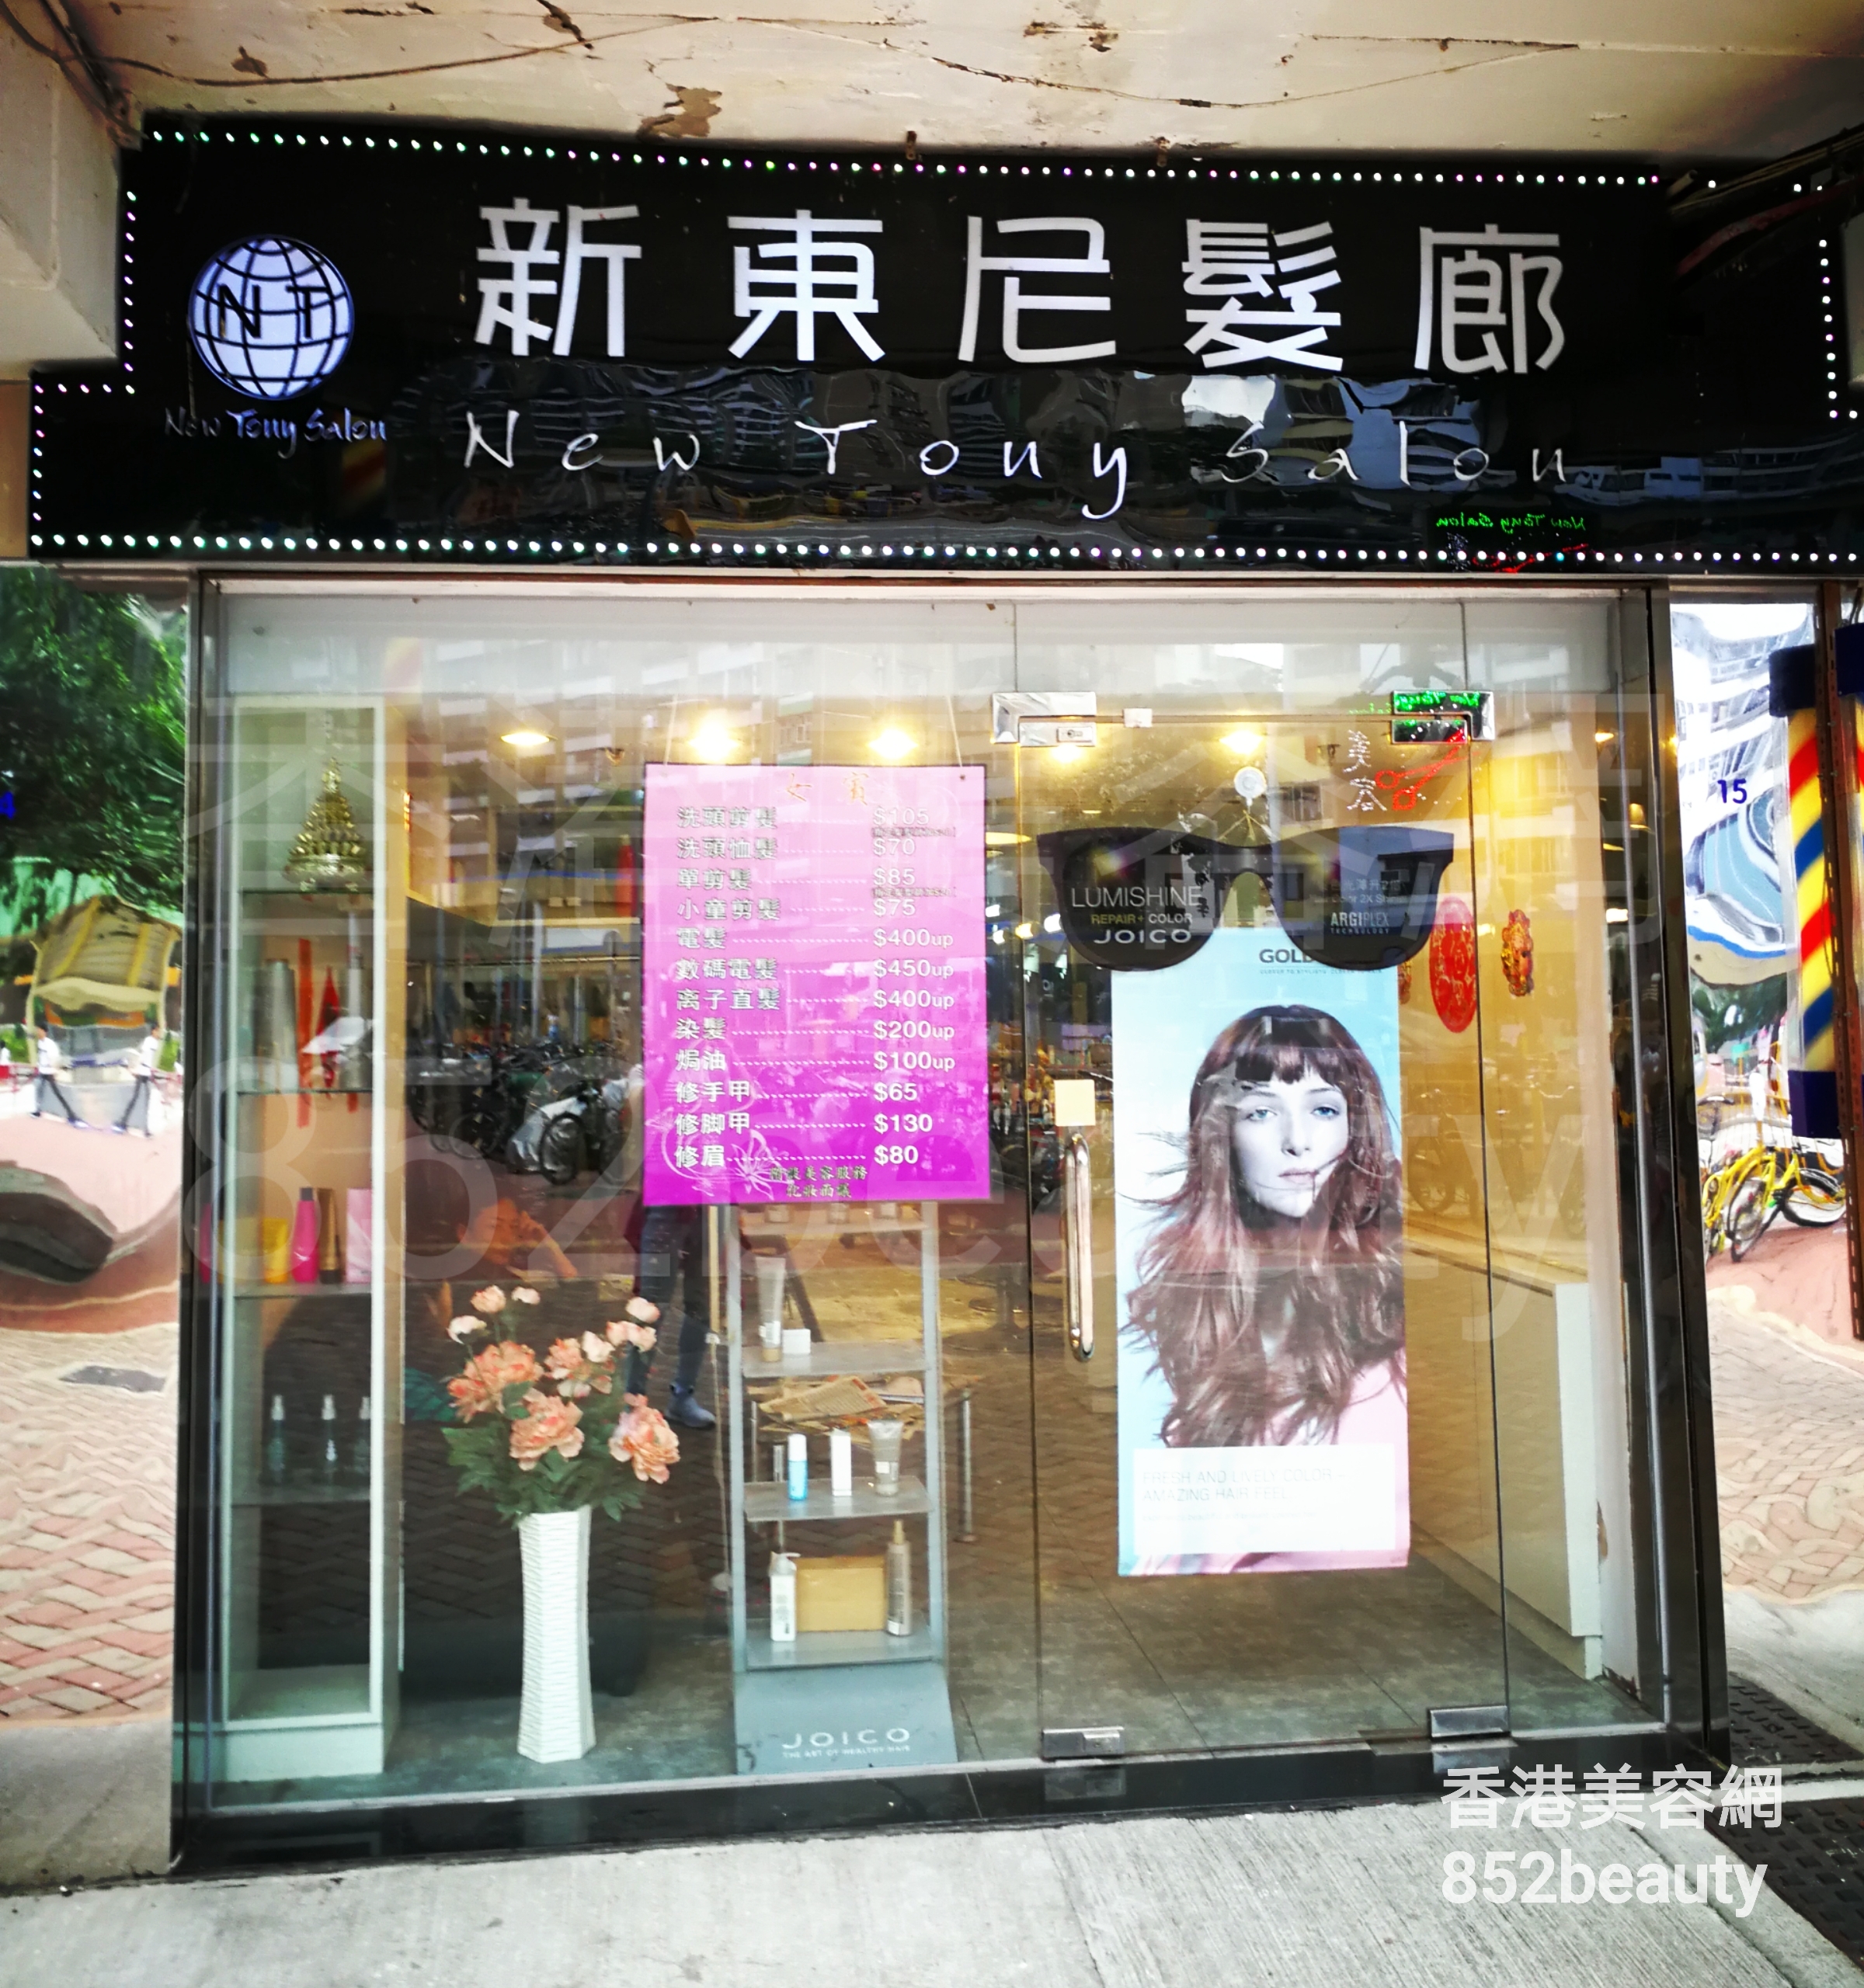 香港美容網 Hong Kong Beauty Salon 美容院 / 美容師: 新東尼髮廊